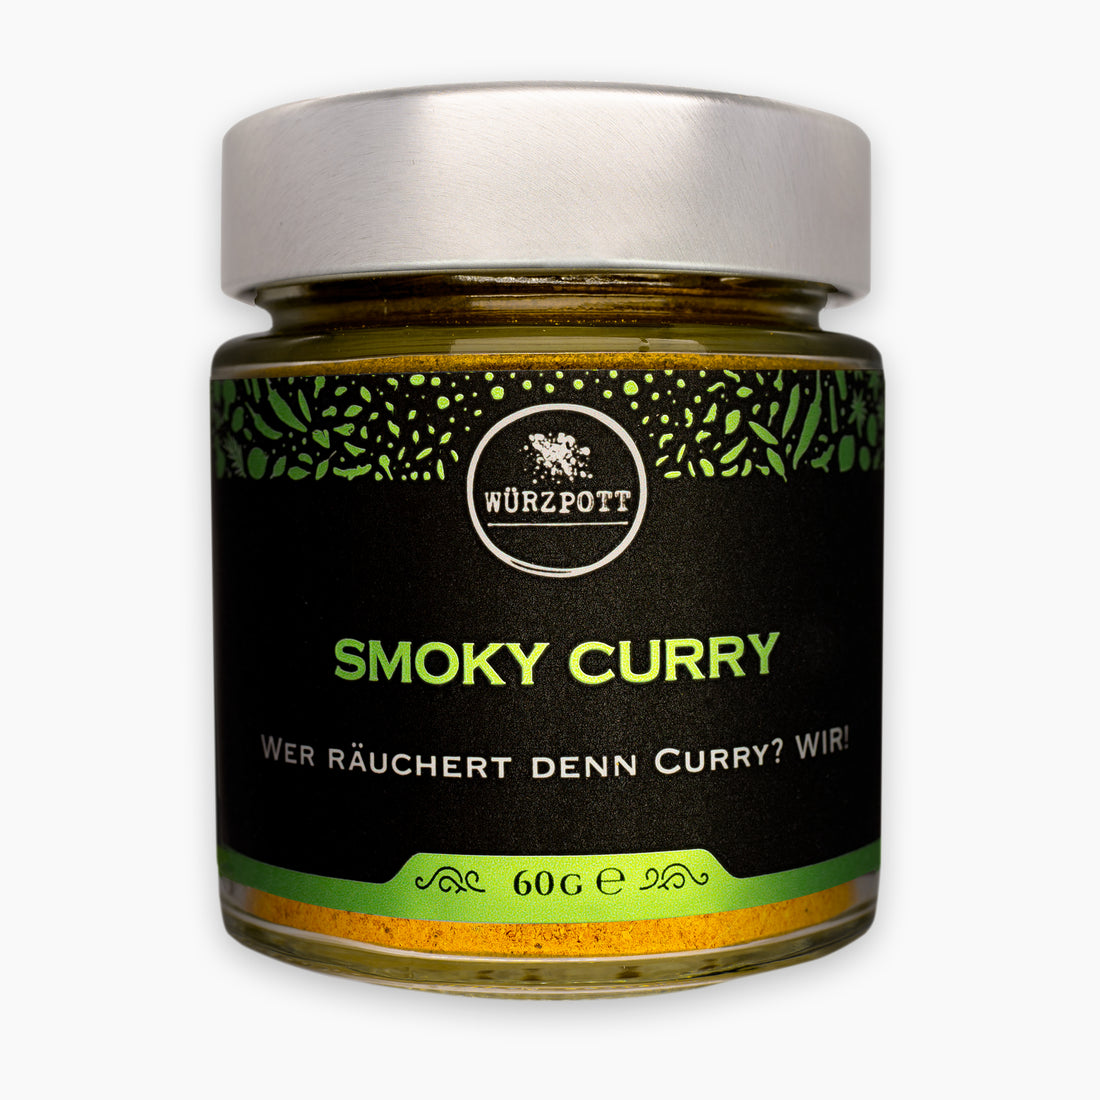 Smoky Curry #401